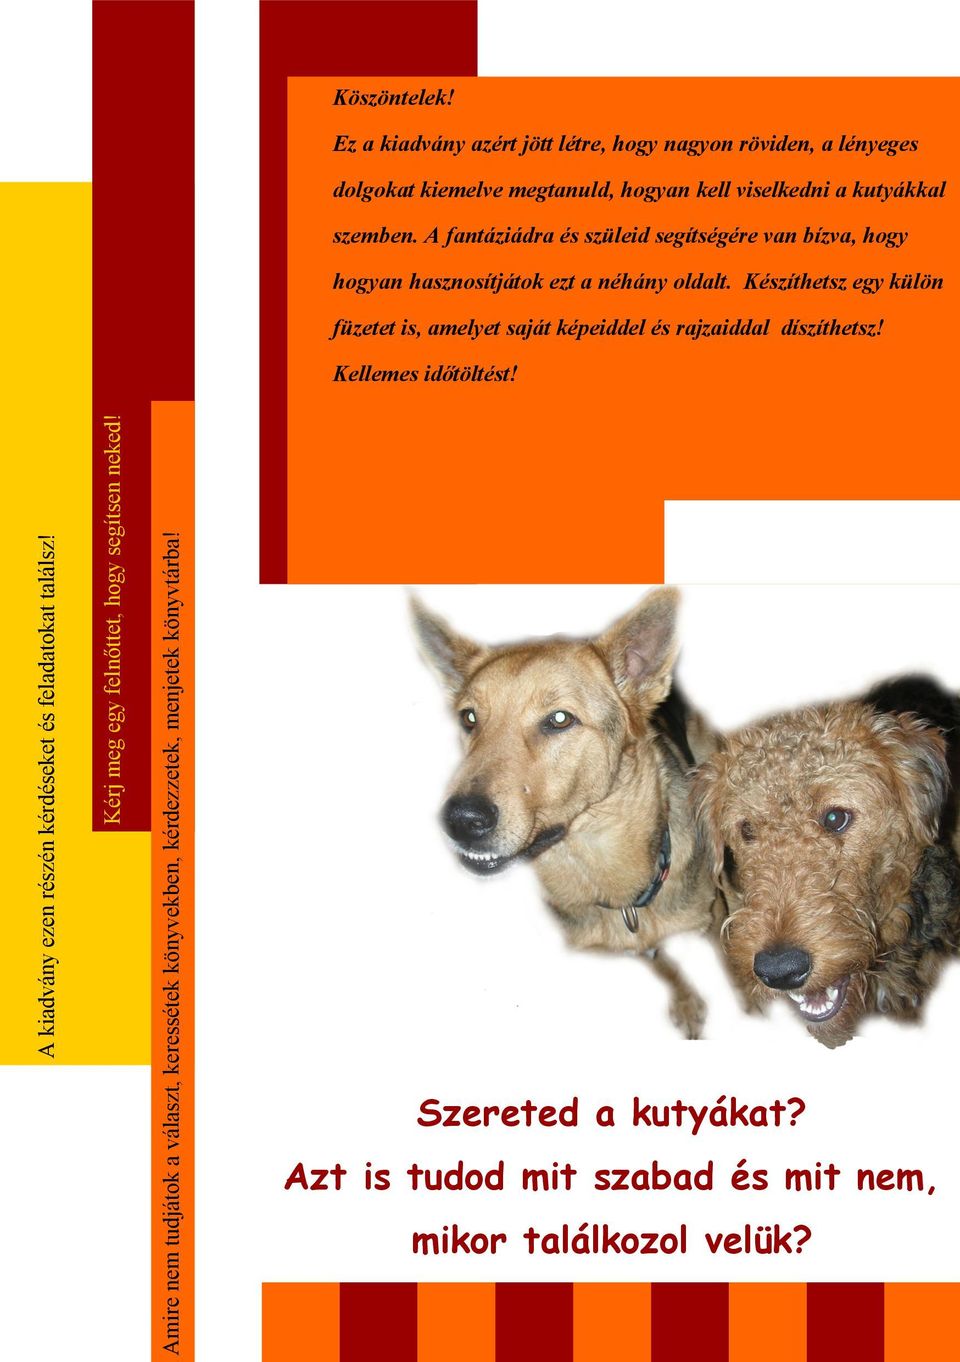 Ez a kiadvány azért jött létre, hogy nagyon röviden, a lényeges dolgokat kiemelve megtanuld, hogyan kell viselkedni a kutyákkal szemben.